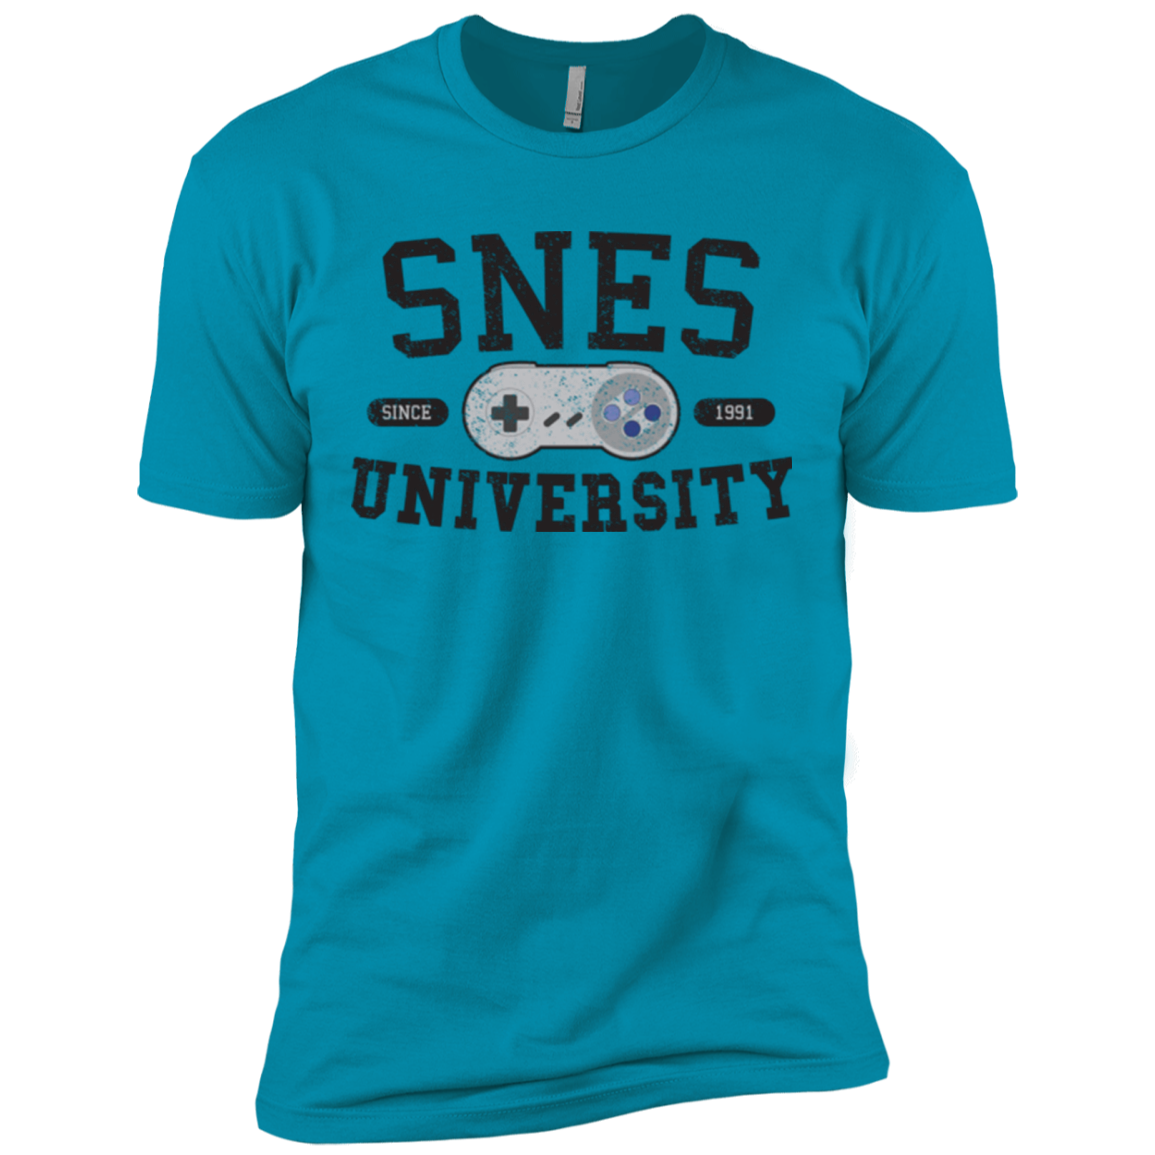 SNES Men's Premium T-Shirt